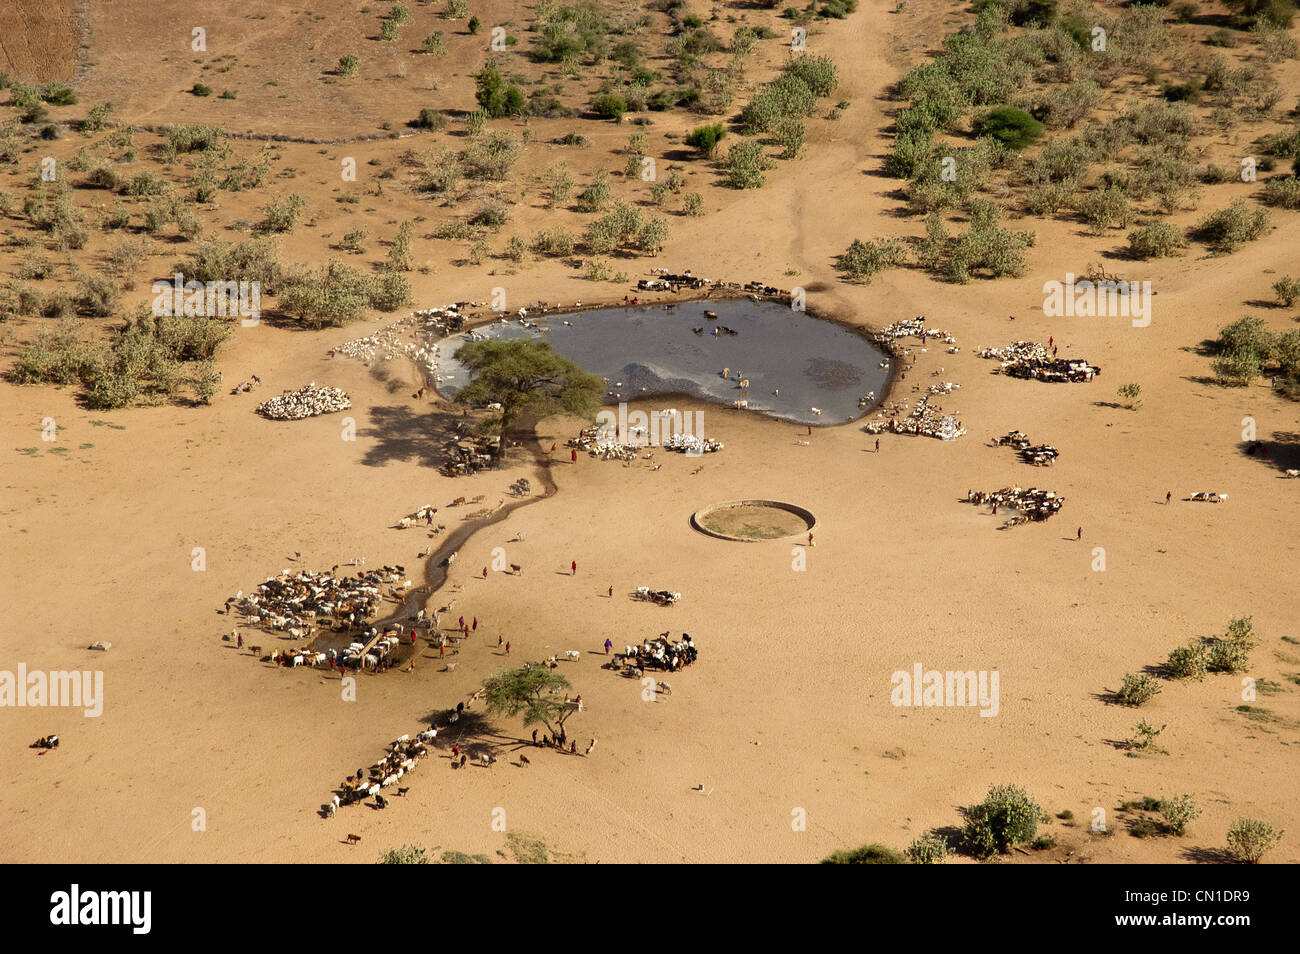 Le bétail Maasai à un étang, vue aérienne, Malambo, région d'Arusha, Tanzanie Banque D'Images